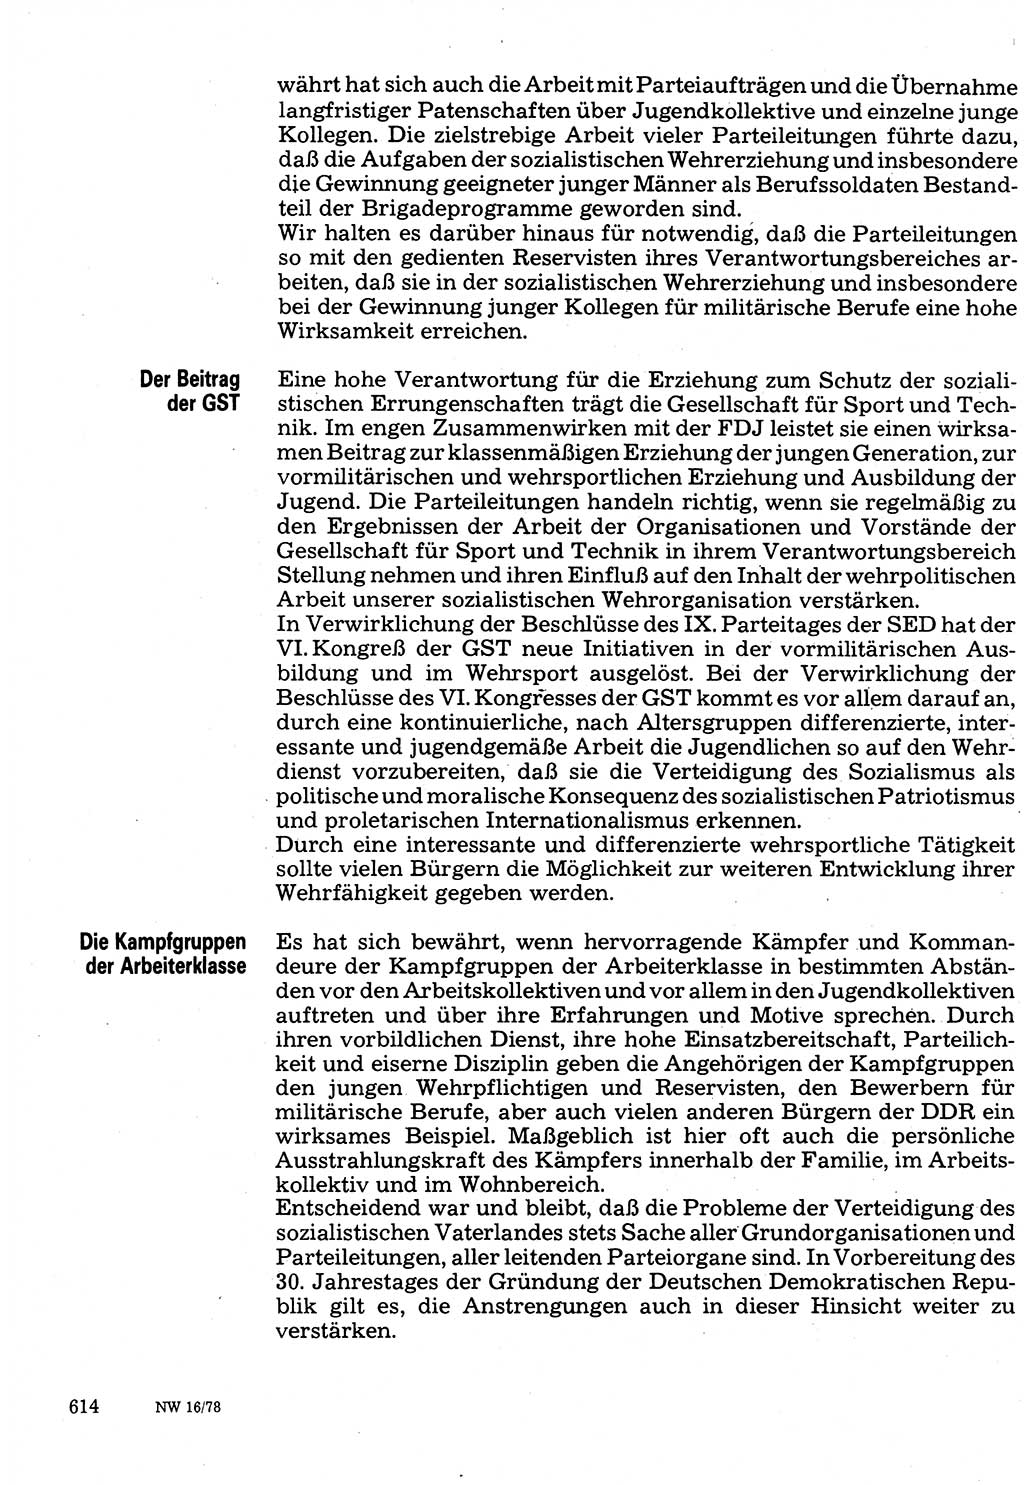 Neuer Weg (NW), Organ des Zentralkomitees (ZK) der SED (Sozialistische Einheitspartei Deutschlands) für Fragen des Parteilebens, 33. Jahrgang [Deutsche Demokratische Republik (DDR)] 1978, Seite 614 (NW ZK SED DDR 1978, S. 614)